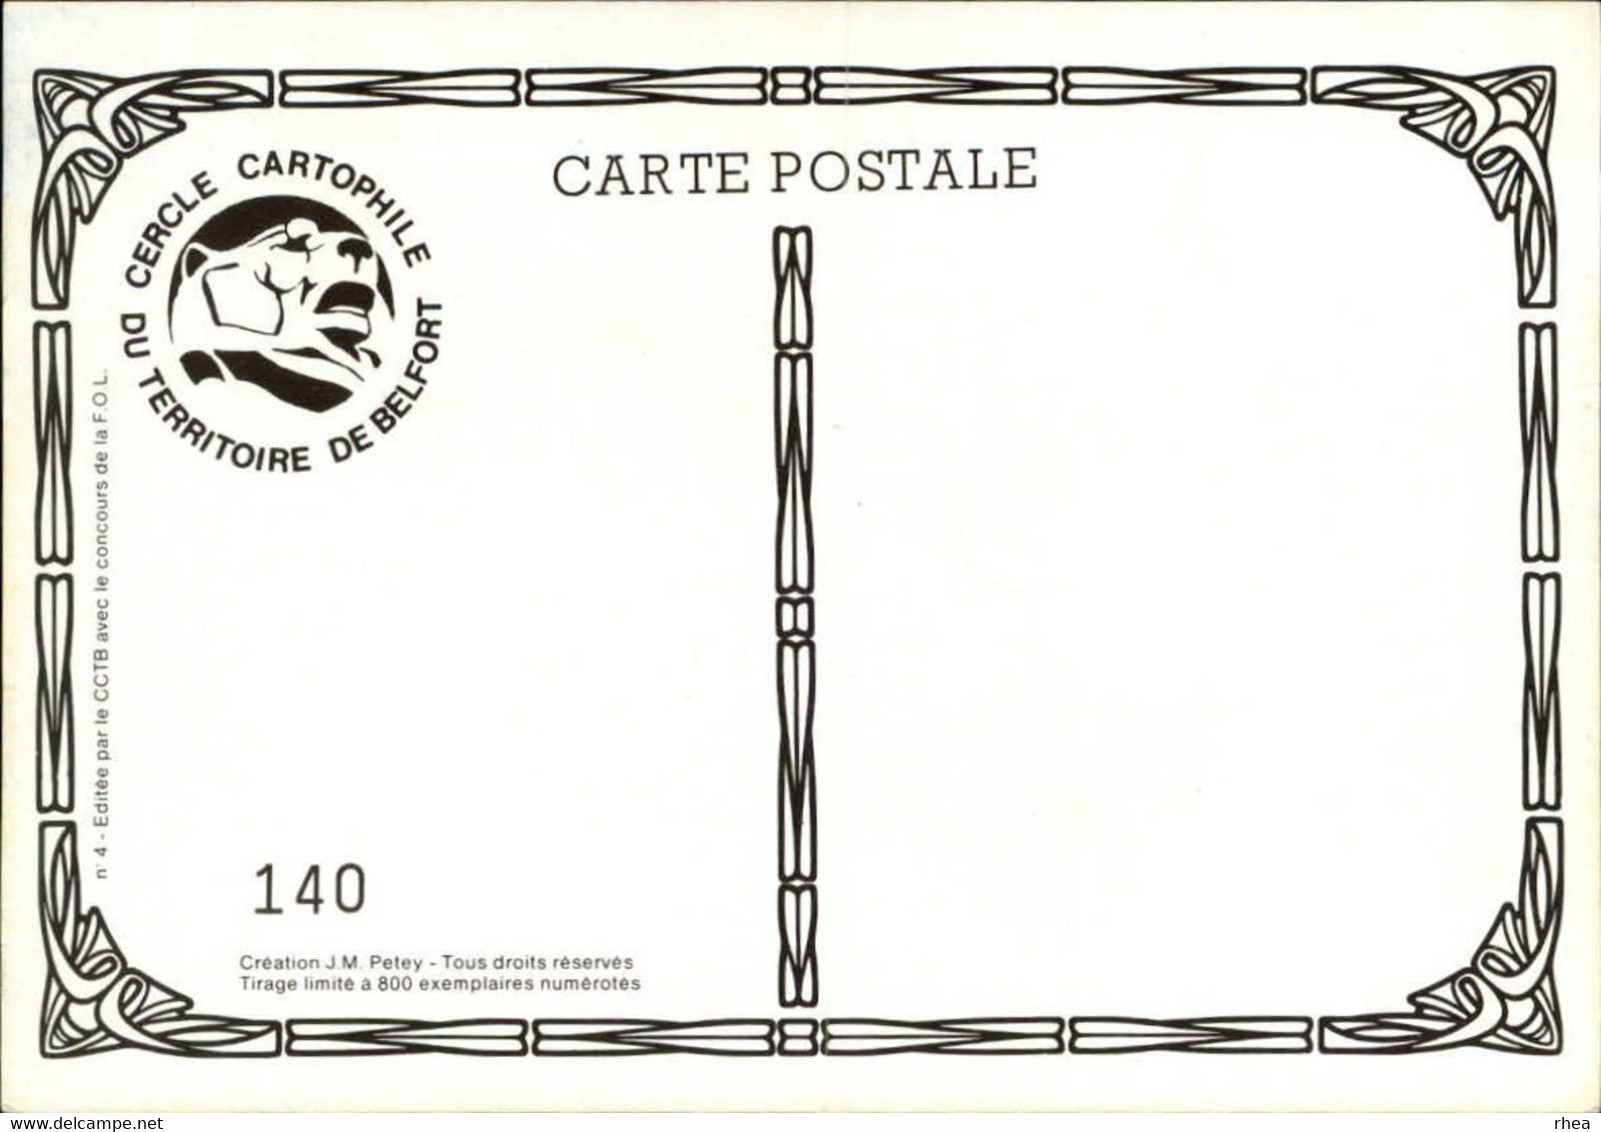 SALONS DE COLLECTIONS - Salon De Cartes Postales - 90 BELFORT - 1983 - Dessin De Petey - Bourses & Salons De Collections